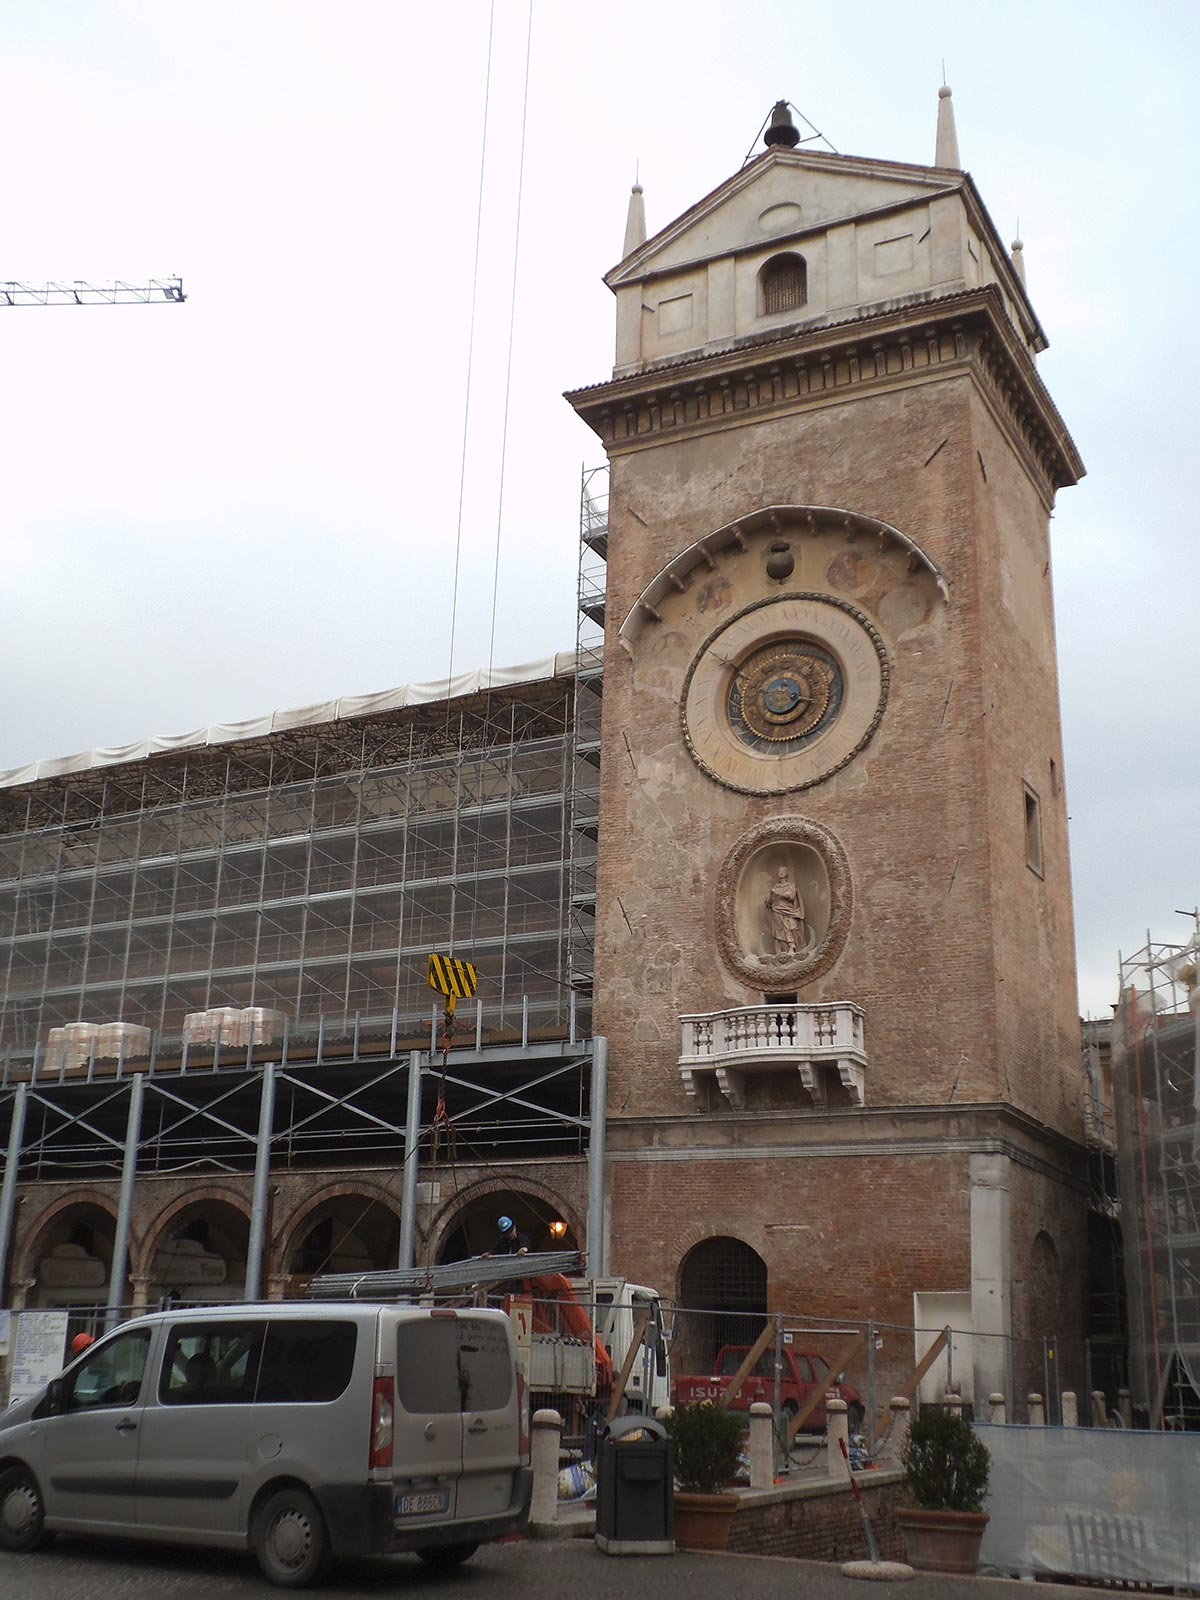 piacenti-spa-restauro-torre-del-orologio-mantova